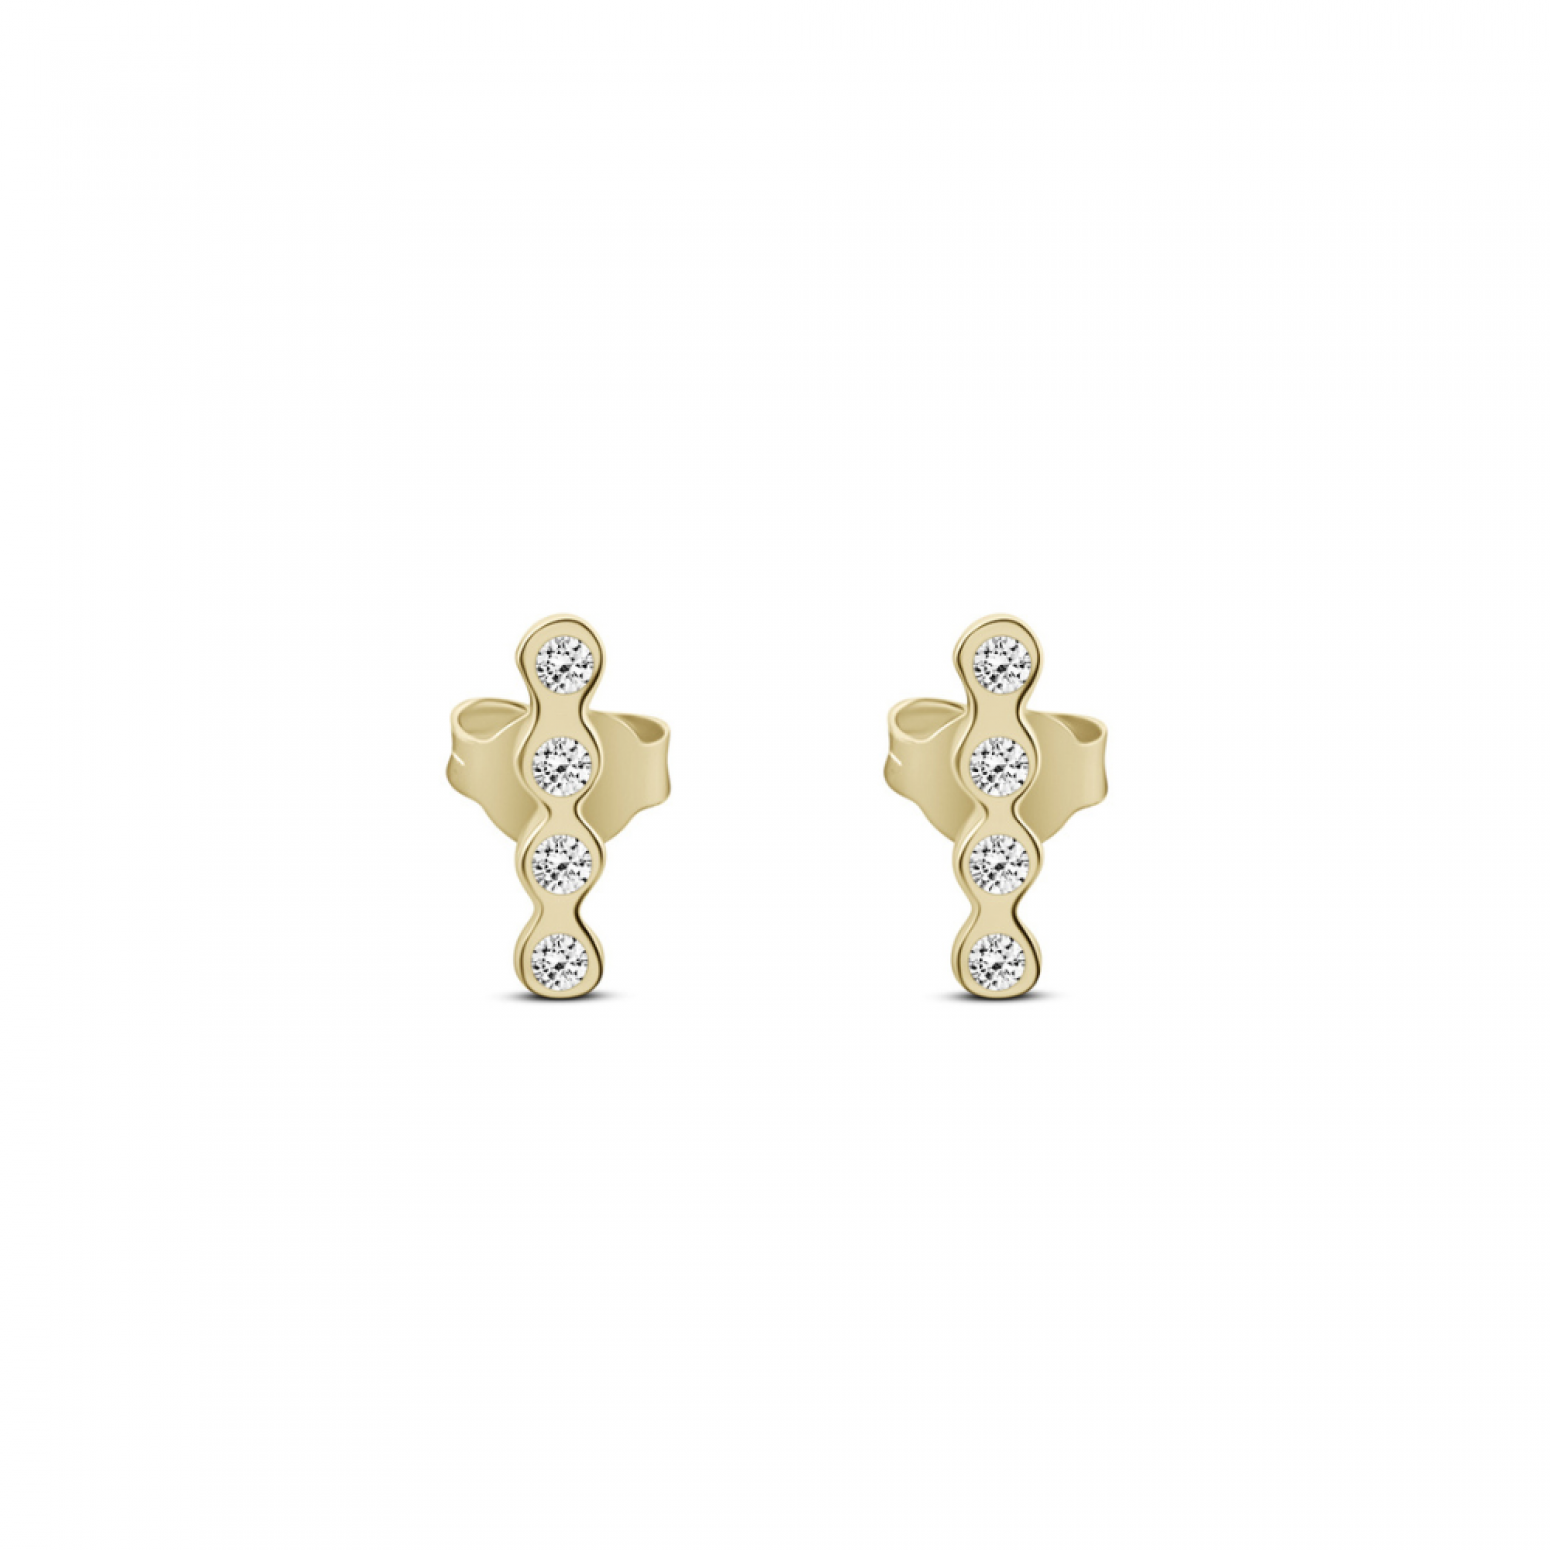 Earrings K9 gold with zircon, sk4125 EARRINGS Κοσμηματα - chrilia.gr